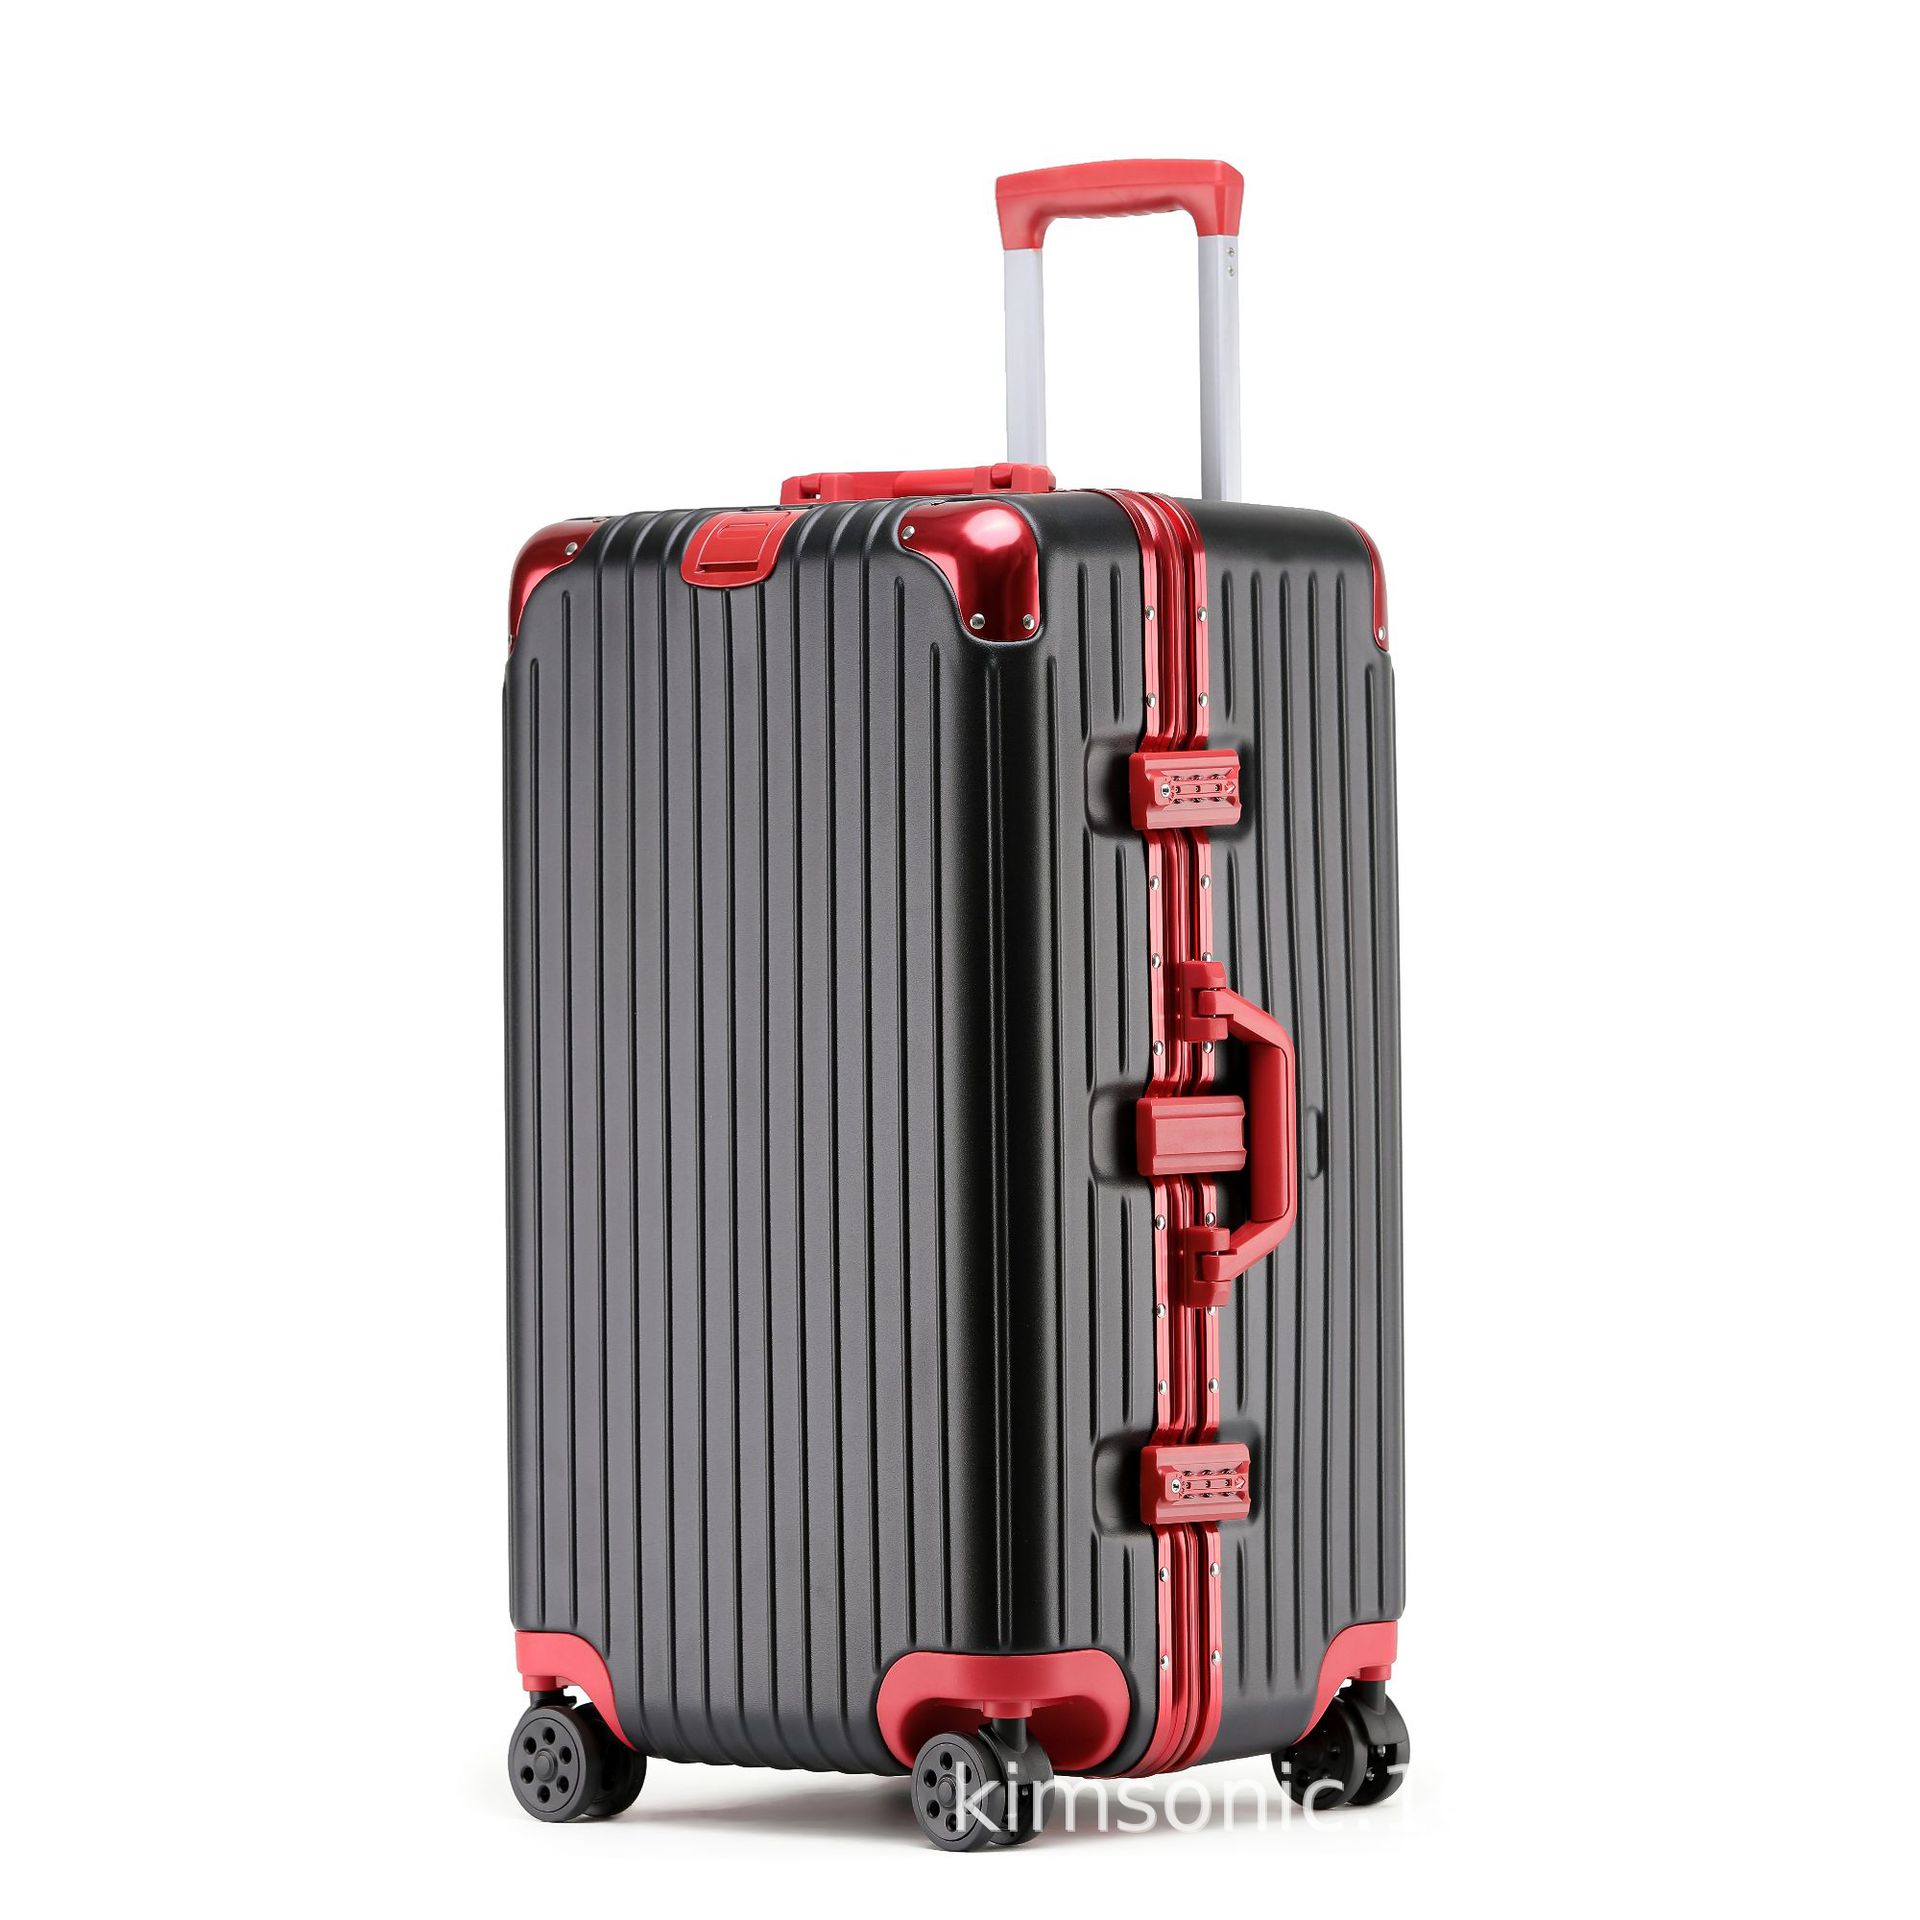 运动款铝框行李箱 PC材质磨砂防刮旅行箱 大容量出游拉杆箱